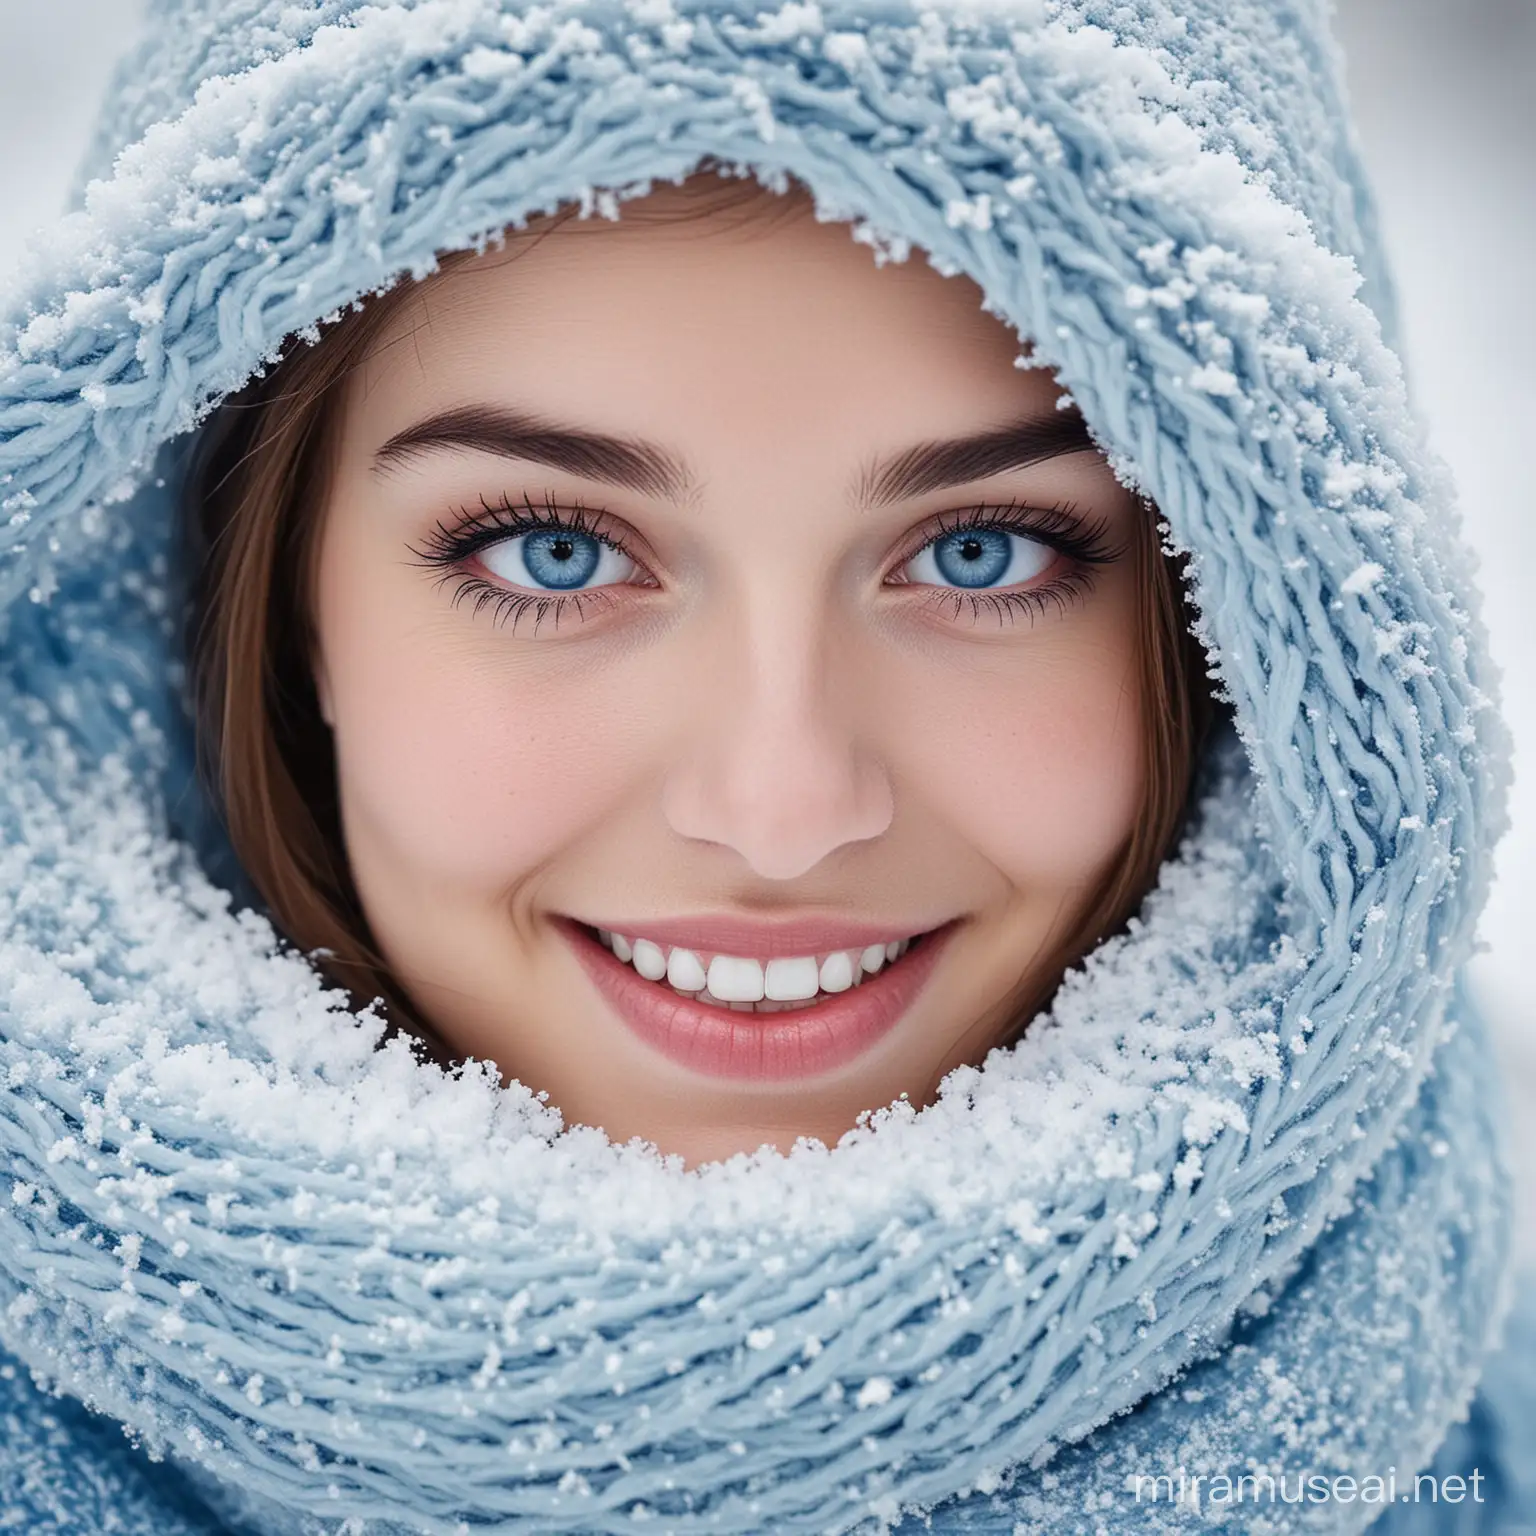 Schneefrau
Lächeln
Augen blau
wunderhübsch